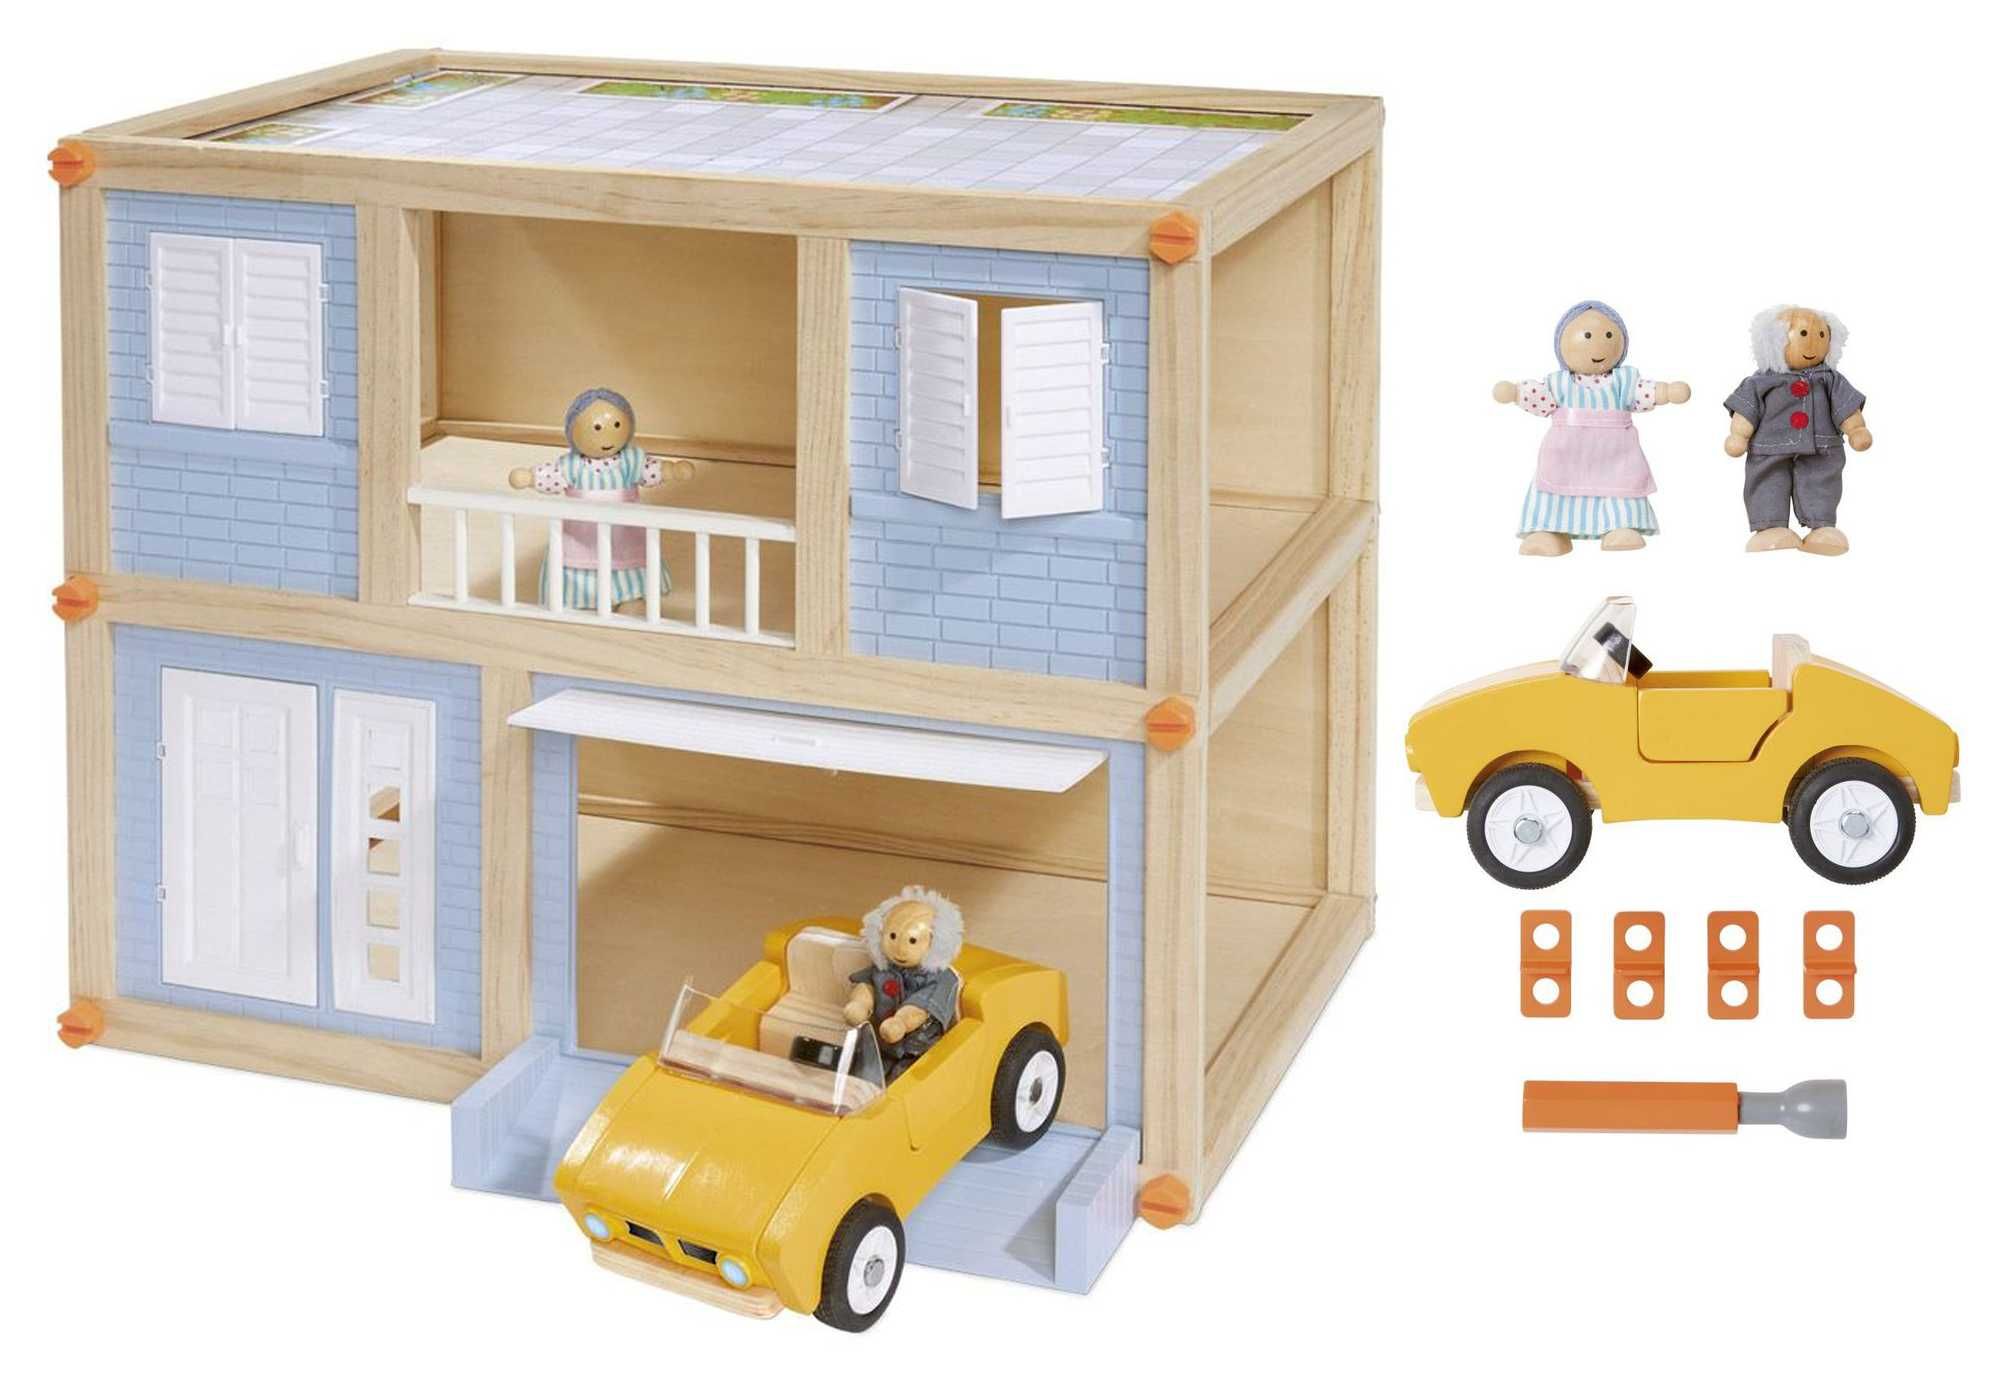 Miejski domek dla lalek samochód otwierane drzwi garaż 2 lalki